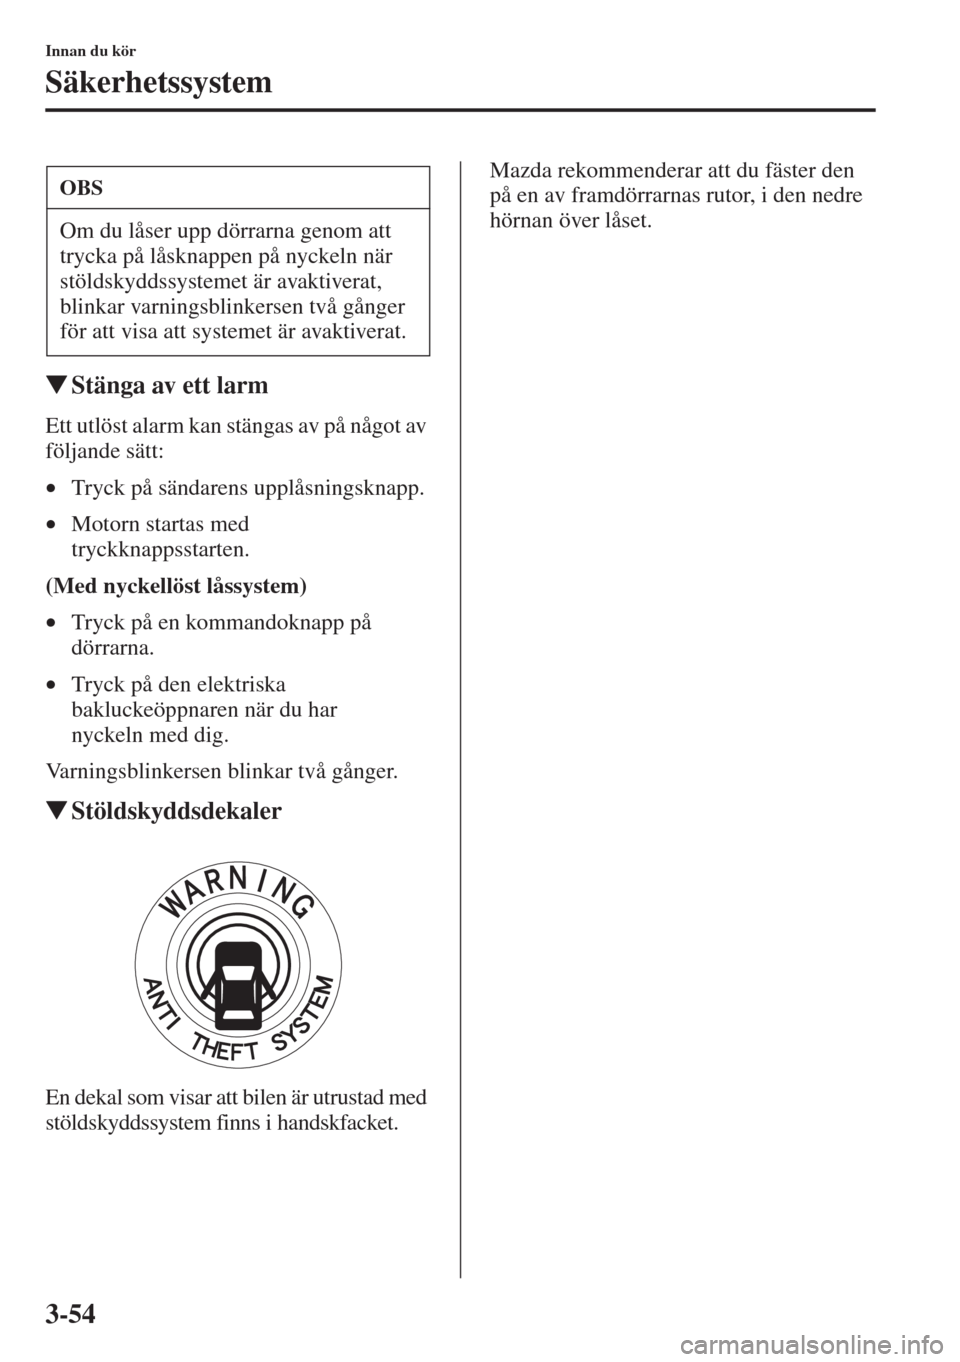 MAZDA MODEL CX-5 2015  Ägarmanual (in Swedish) 3-54
Innan du kör
Säkerhetssystem
�WStänga av ett larm
Ett utlöst alarm kan stängas av på något av 
följande sätt:
•Tryck på sändarens upplåsningsknapp.
•Motorn startas med 
tryckknapp